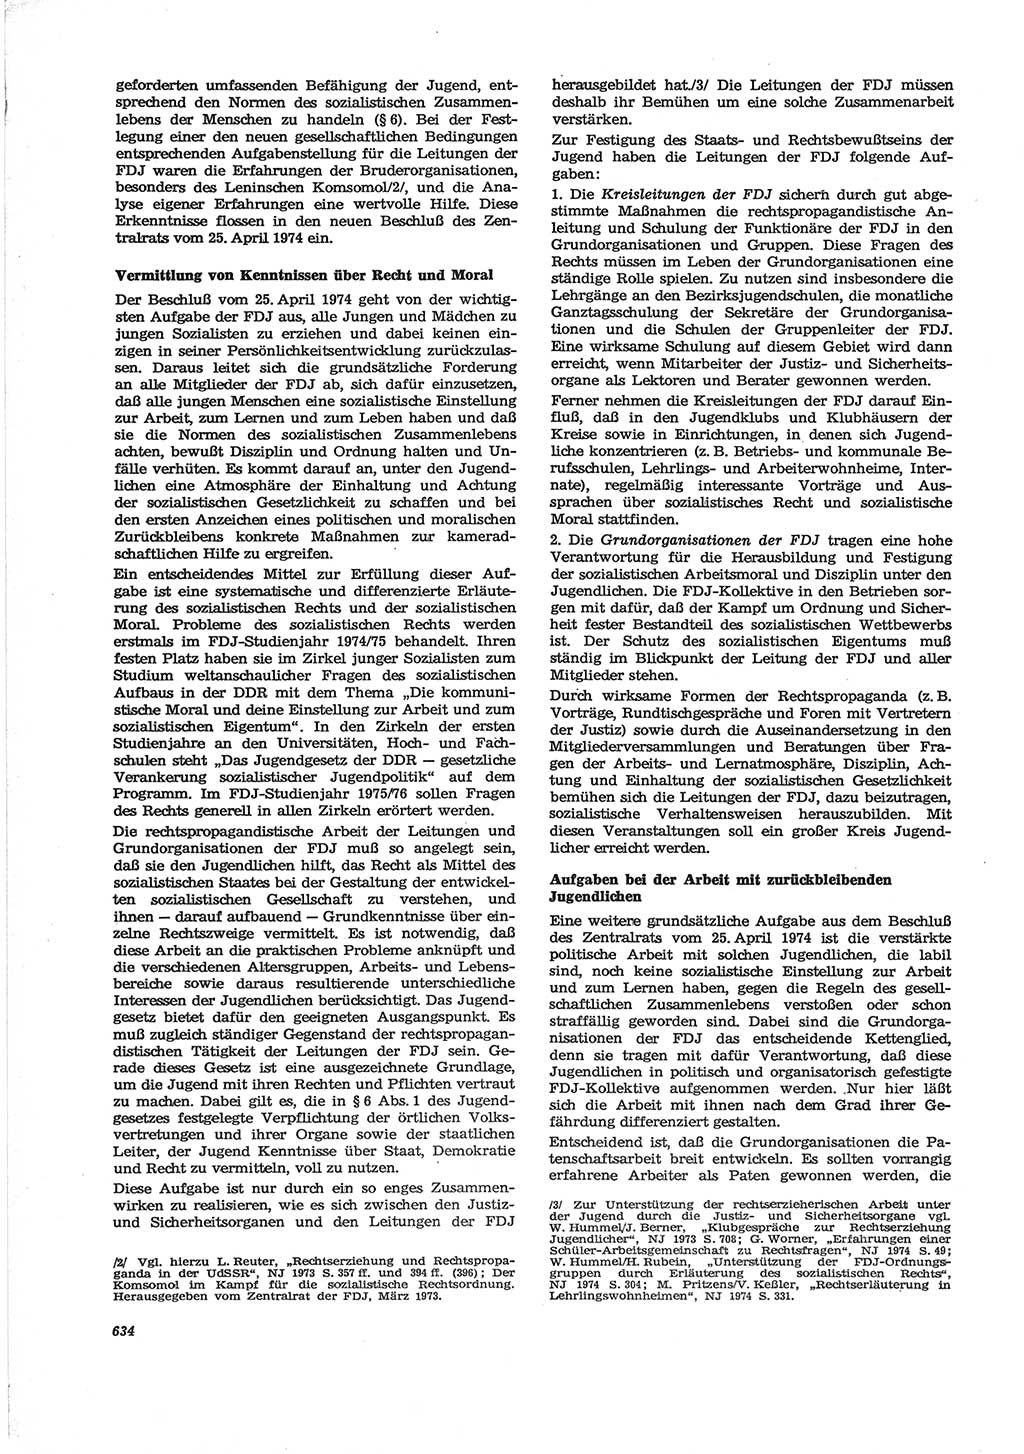 Neue Justiz (NJ), Zeitschrift für Recht und Rechtswissenschaft [Deutsche Demokratische Republik (DDR)], 28. Jahrgang 1974, Seite 634 (NJ DDR 1974, S. 634)